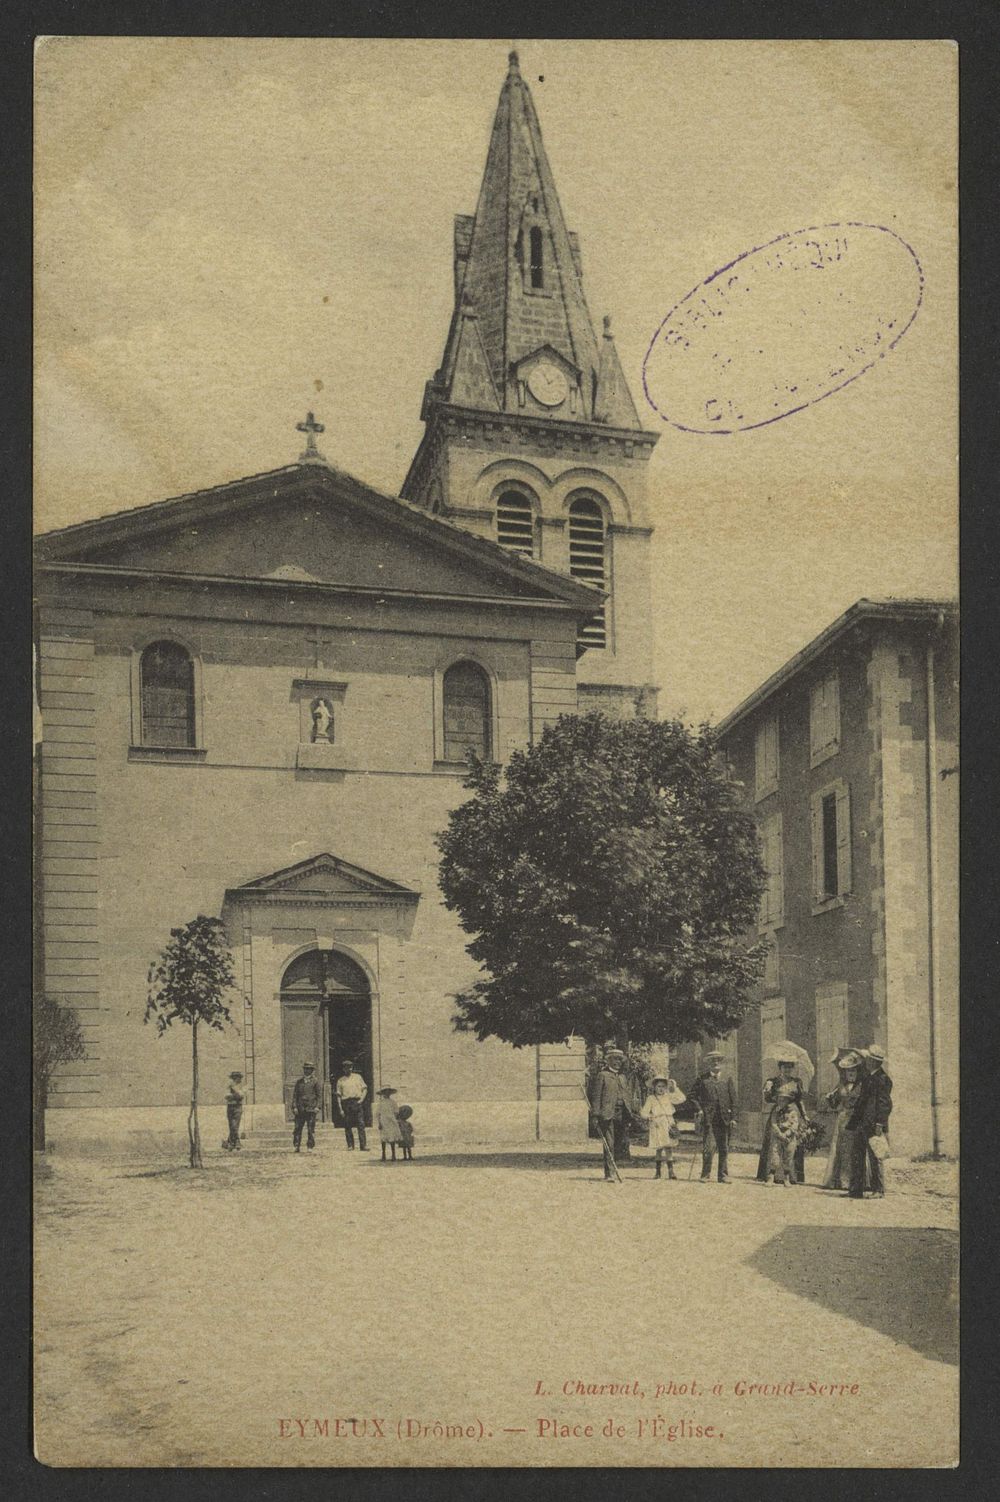 Eymeux (Drôme). - Place de l'Église